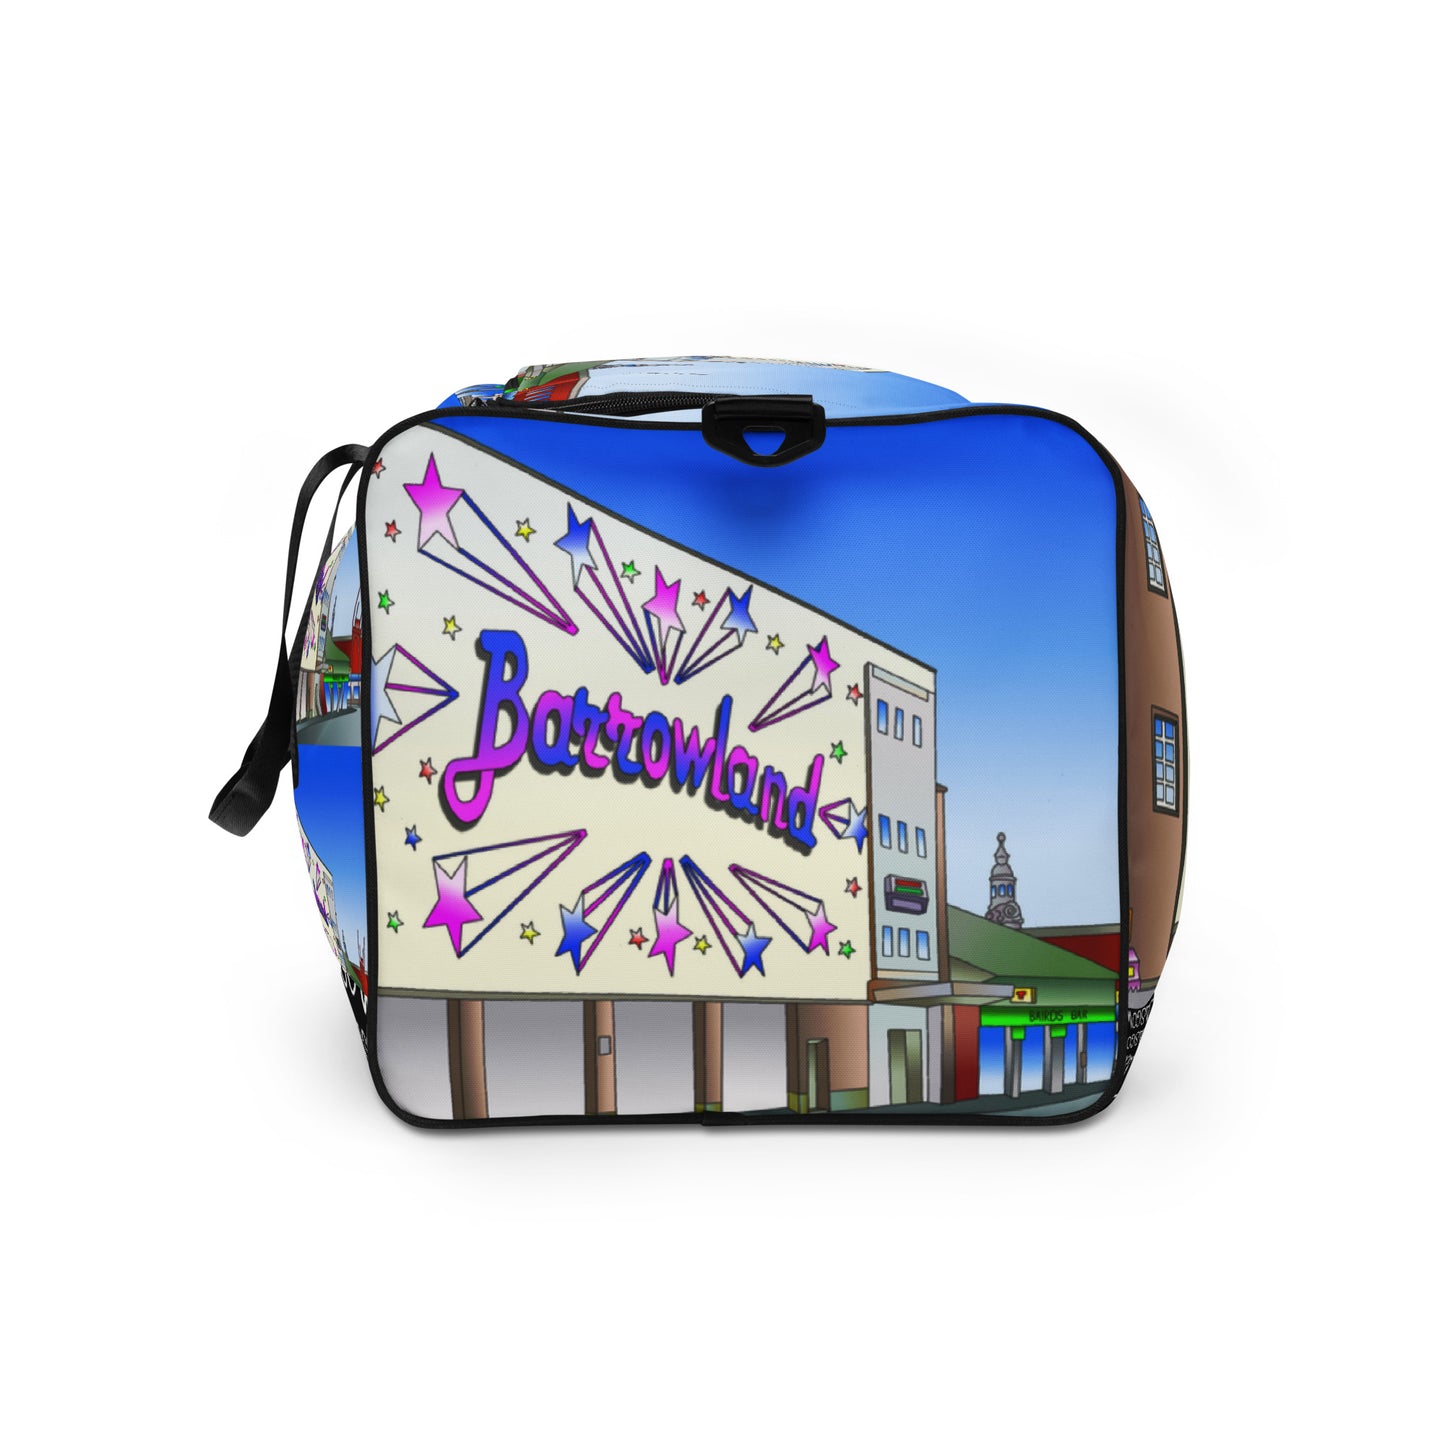 The Barrowland Glasgow Duffle bag